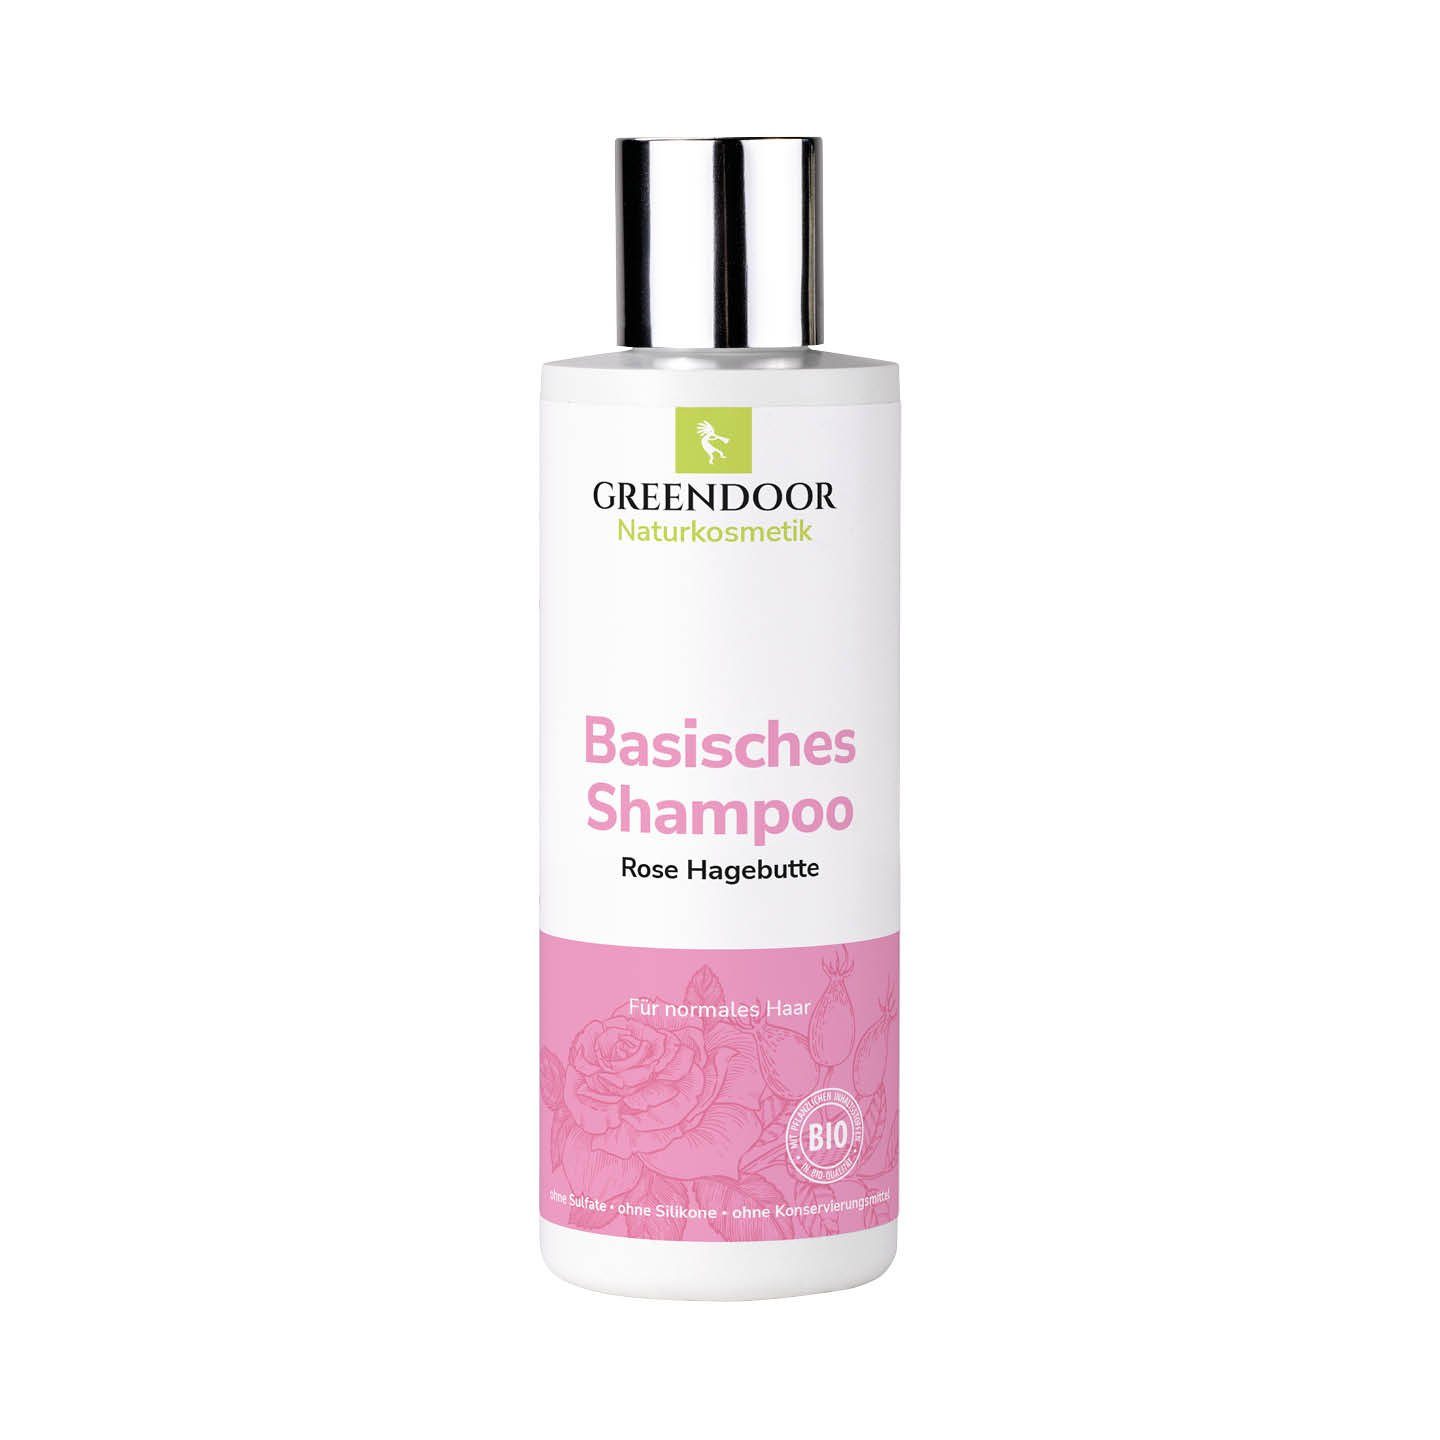 GREENDOOR Duschgel Basisches Shampoo Rose Hagebutte | Duschgele